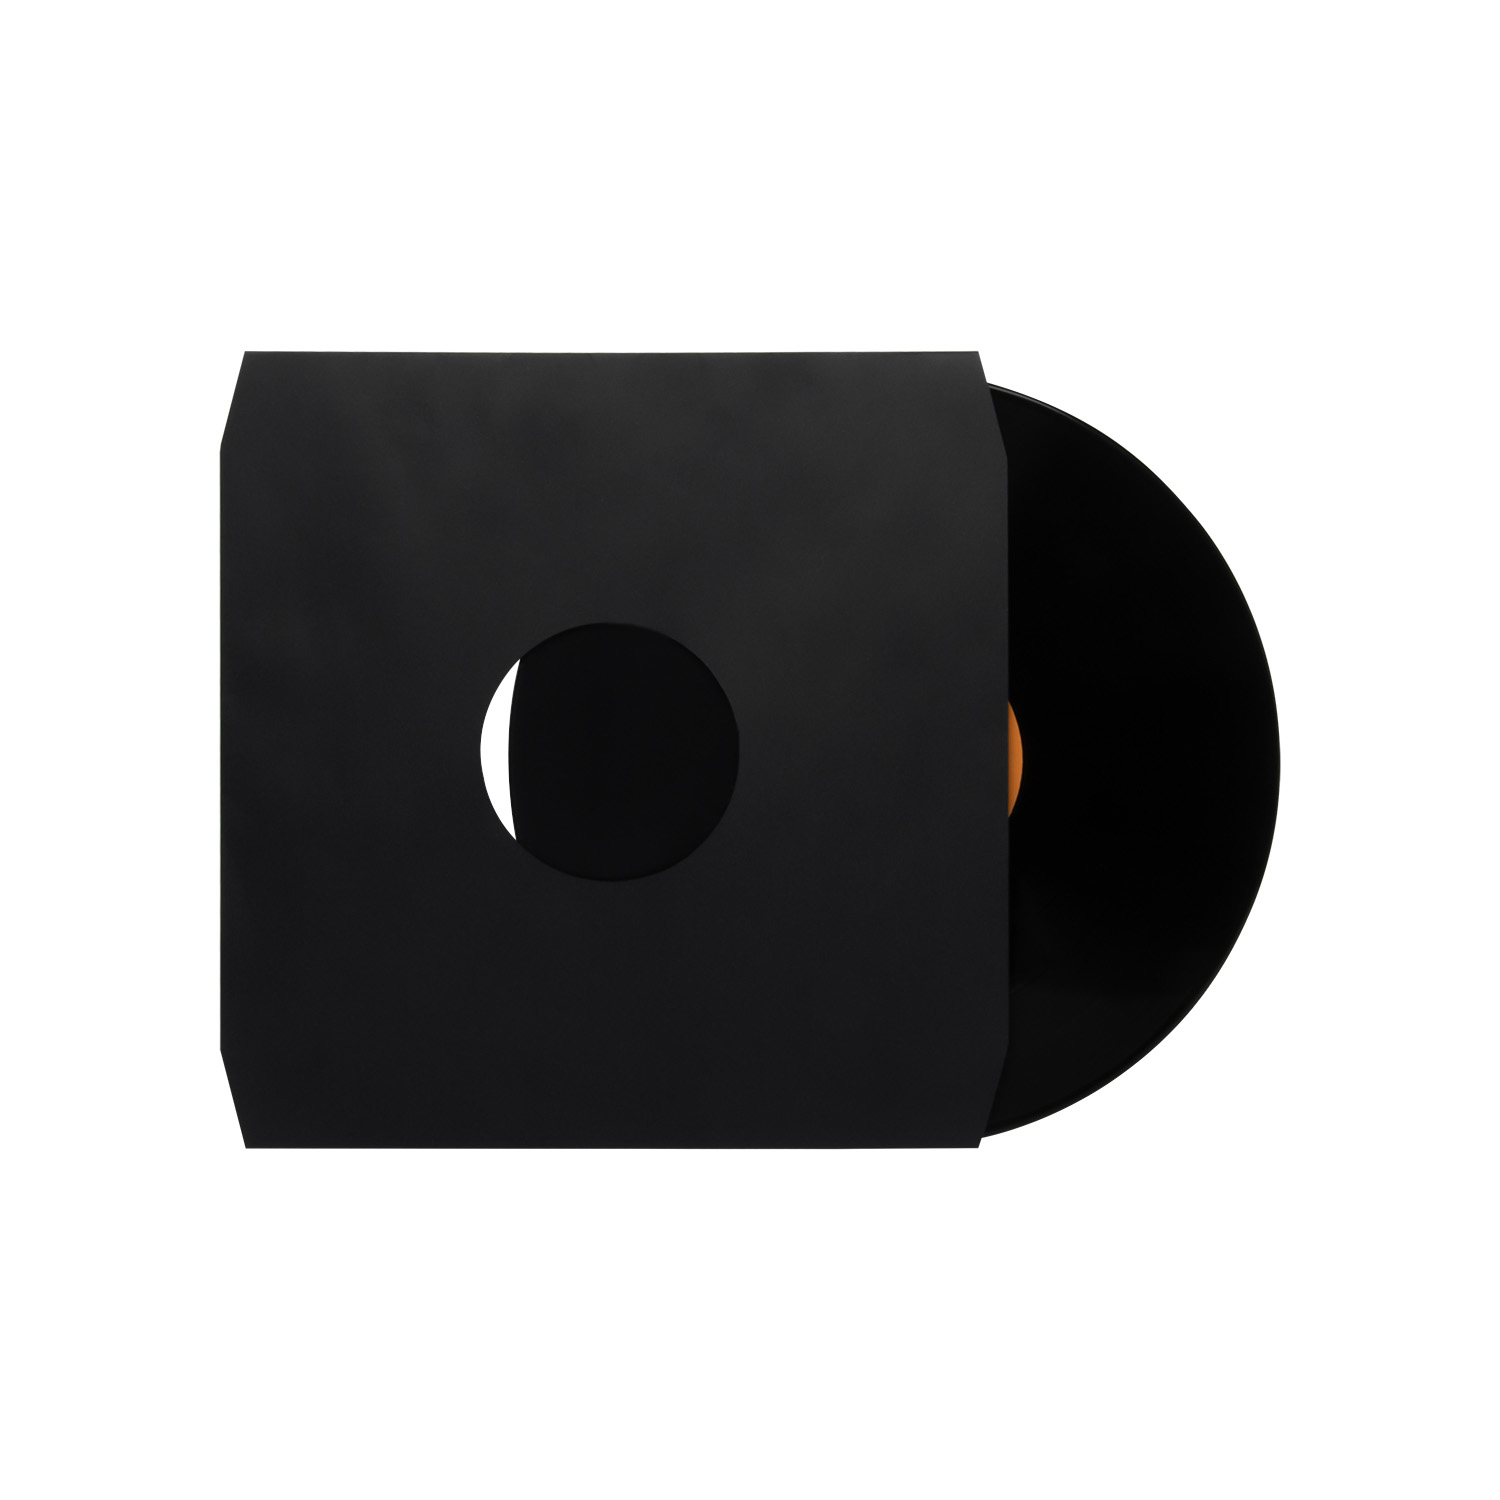 Copertine interne per dischi in vinile - Carta pesante priva di acidi con angoli tagliati per la conservazione dei dischi LP